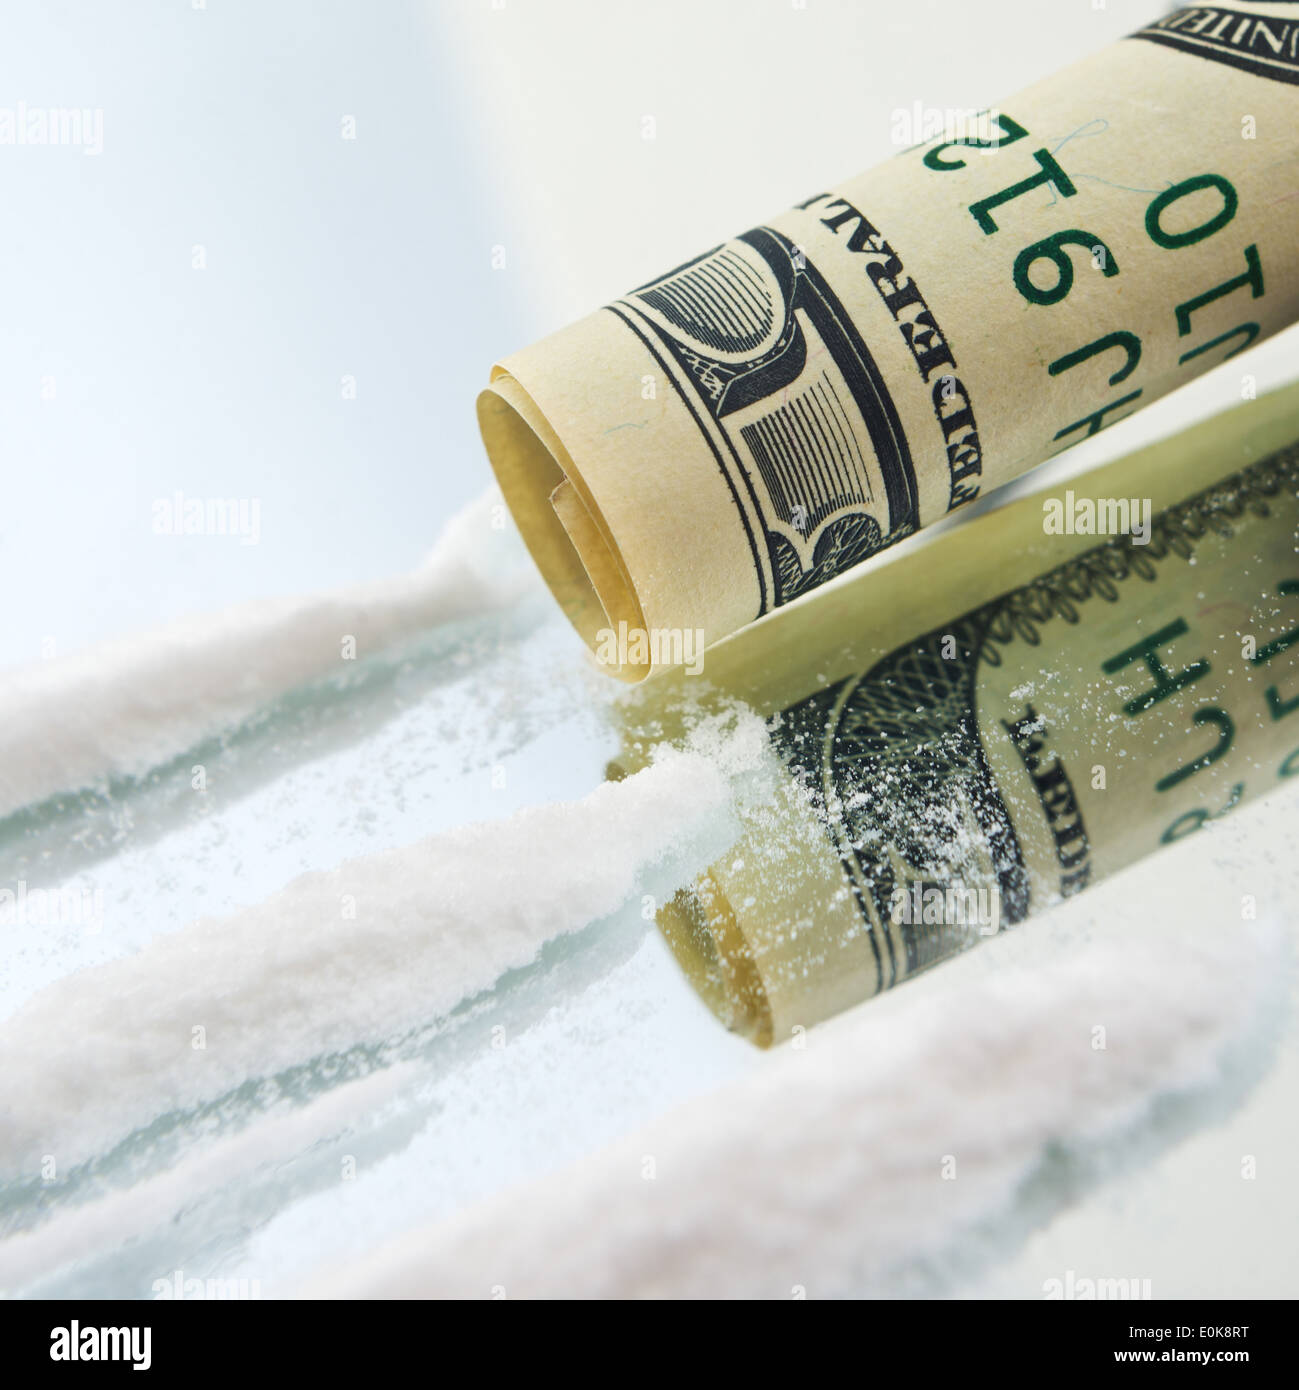 La cocaïne poudre drogues activités et intégrée USA hundred dollar bill pour renifler. Concept de la toxicomanie. Banque D'Images